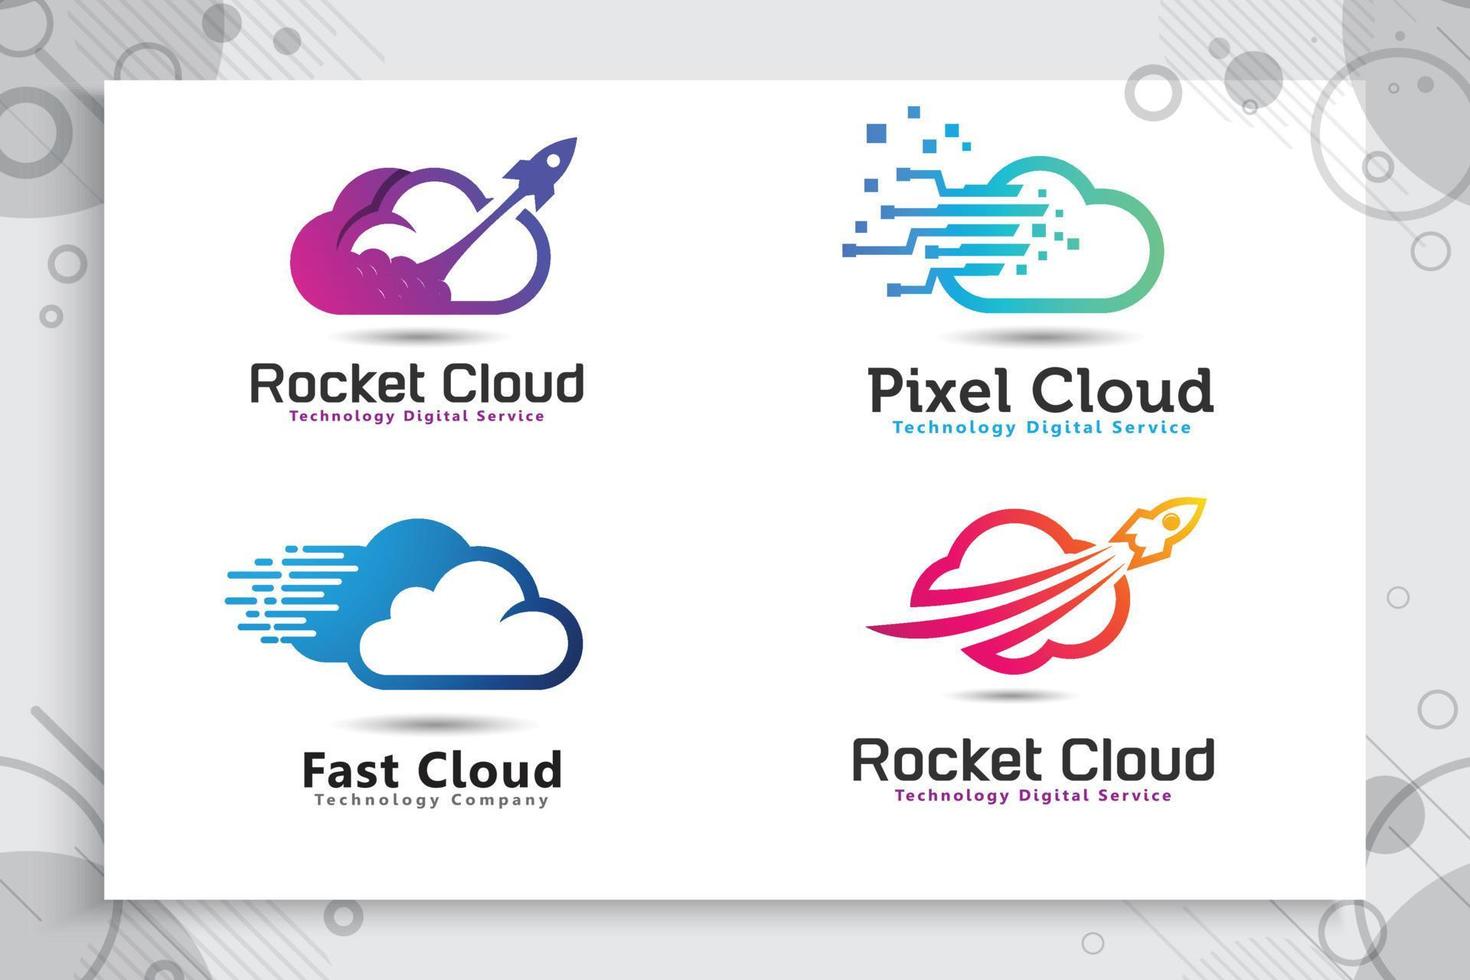 impostare la raccolta del logo vettoriale della nuvola del razzo con uno stile colorato e semplice, la nuvola dell'illustrazione e il razzo come icona simbolo dell'azienda di tecnologia digitale.